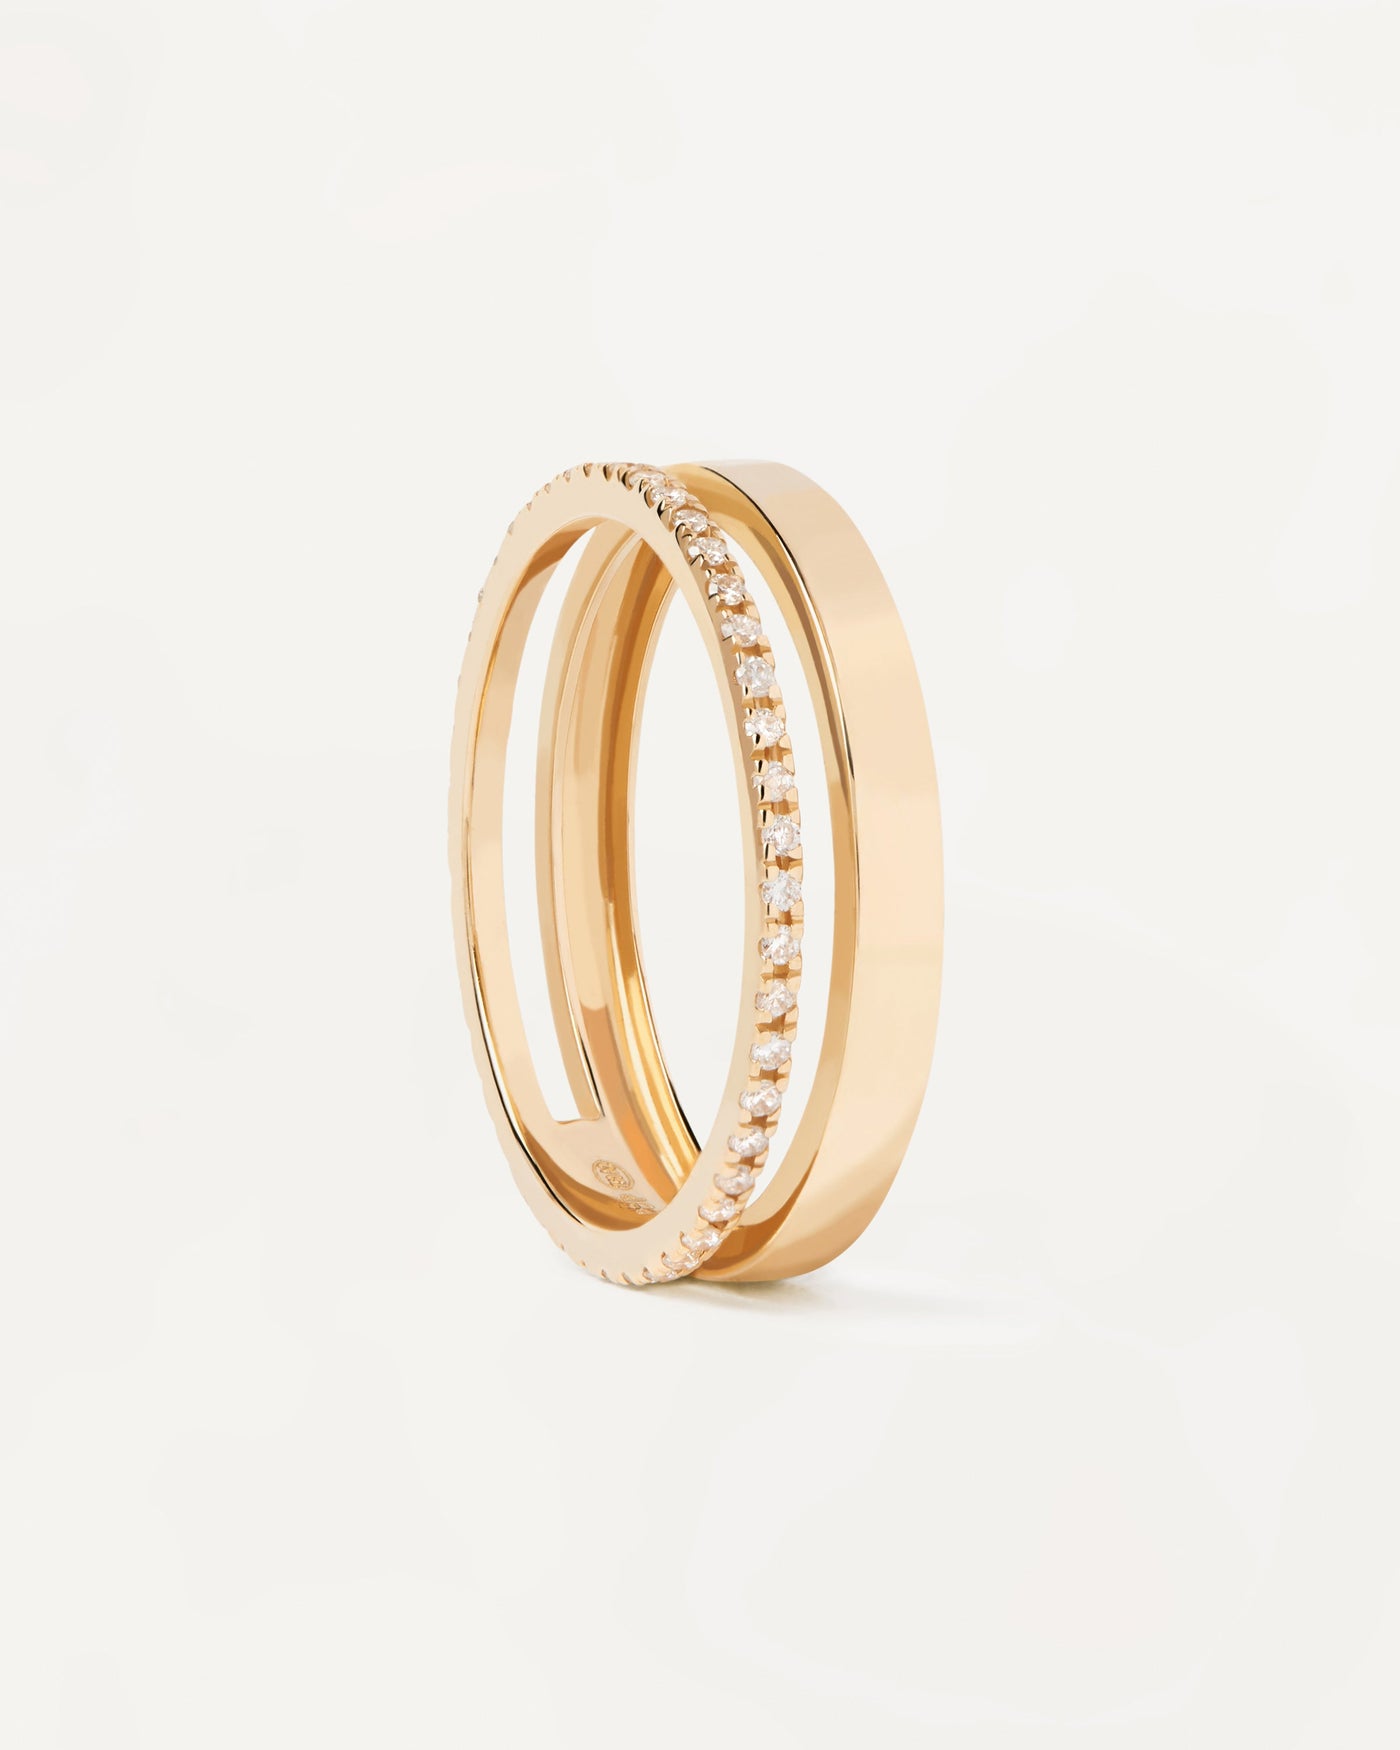 GoldRing mit Diamanten Dual. Solides Gelbgold Ring mit zwei Bändern: Plain & Diamond Band von 0,23 Karat. Erhalten Sie die neuesten Produkte von PDPAOLA. Geben Sie Ihre Bestellung sicher auf und erhalten Sie diesen Bestseller.